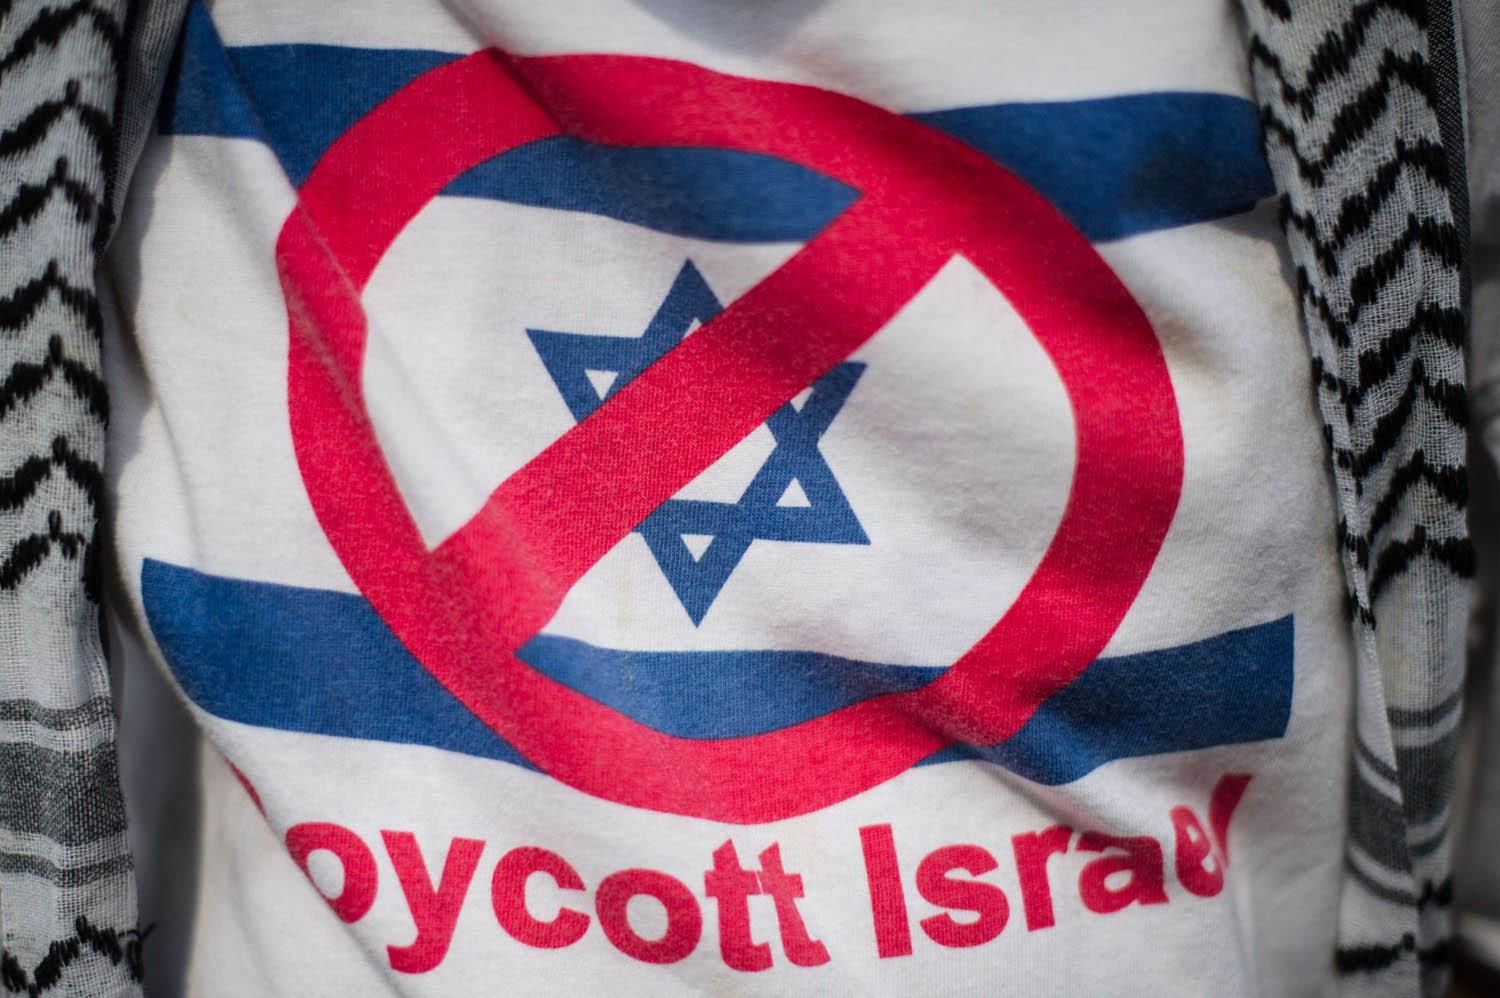 متظاهر يرتدي قميصا يحمل علامة مقاطعة إسرائيل في كوالالامبور